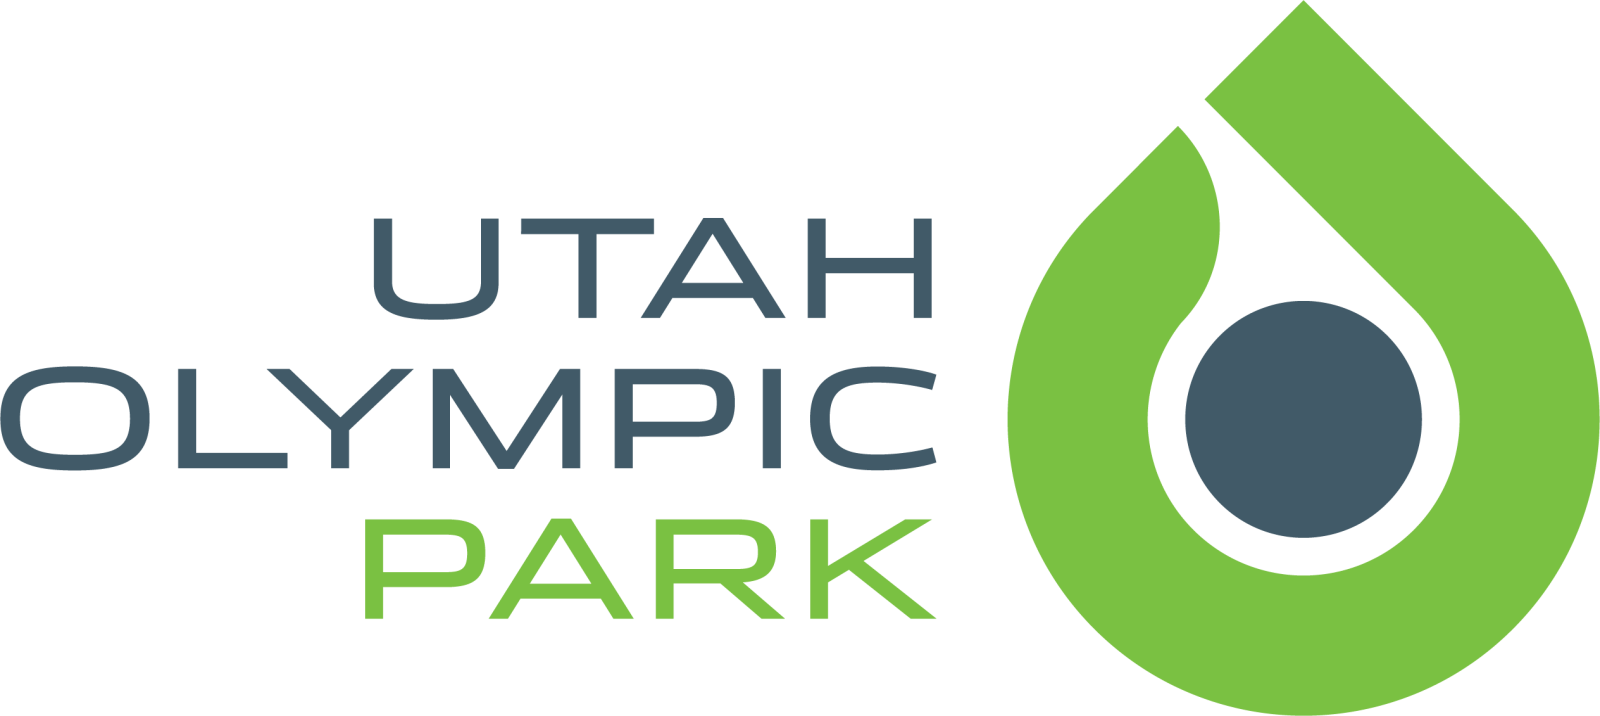 Utah-Olympic-Park-logo.png